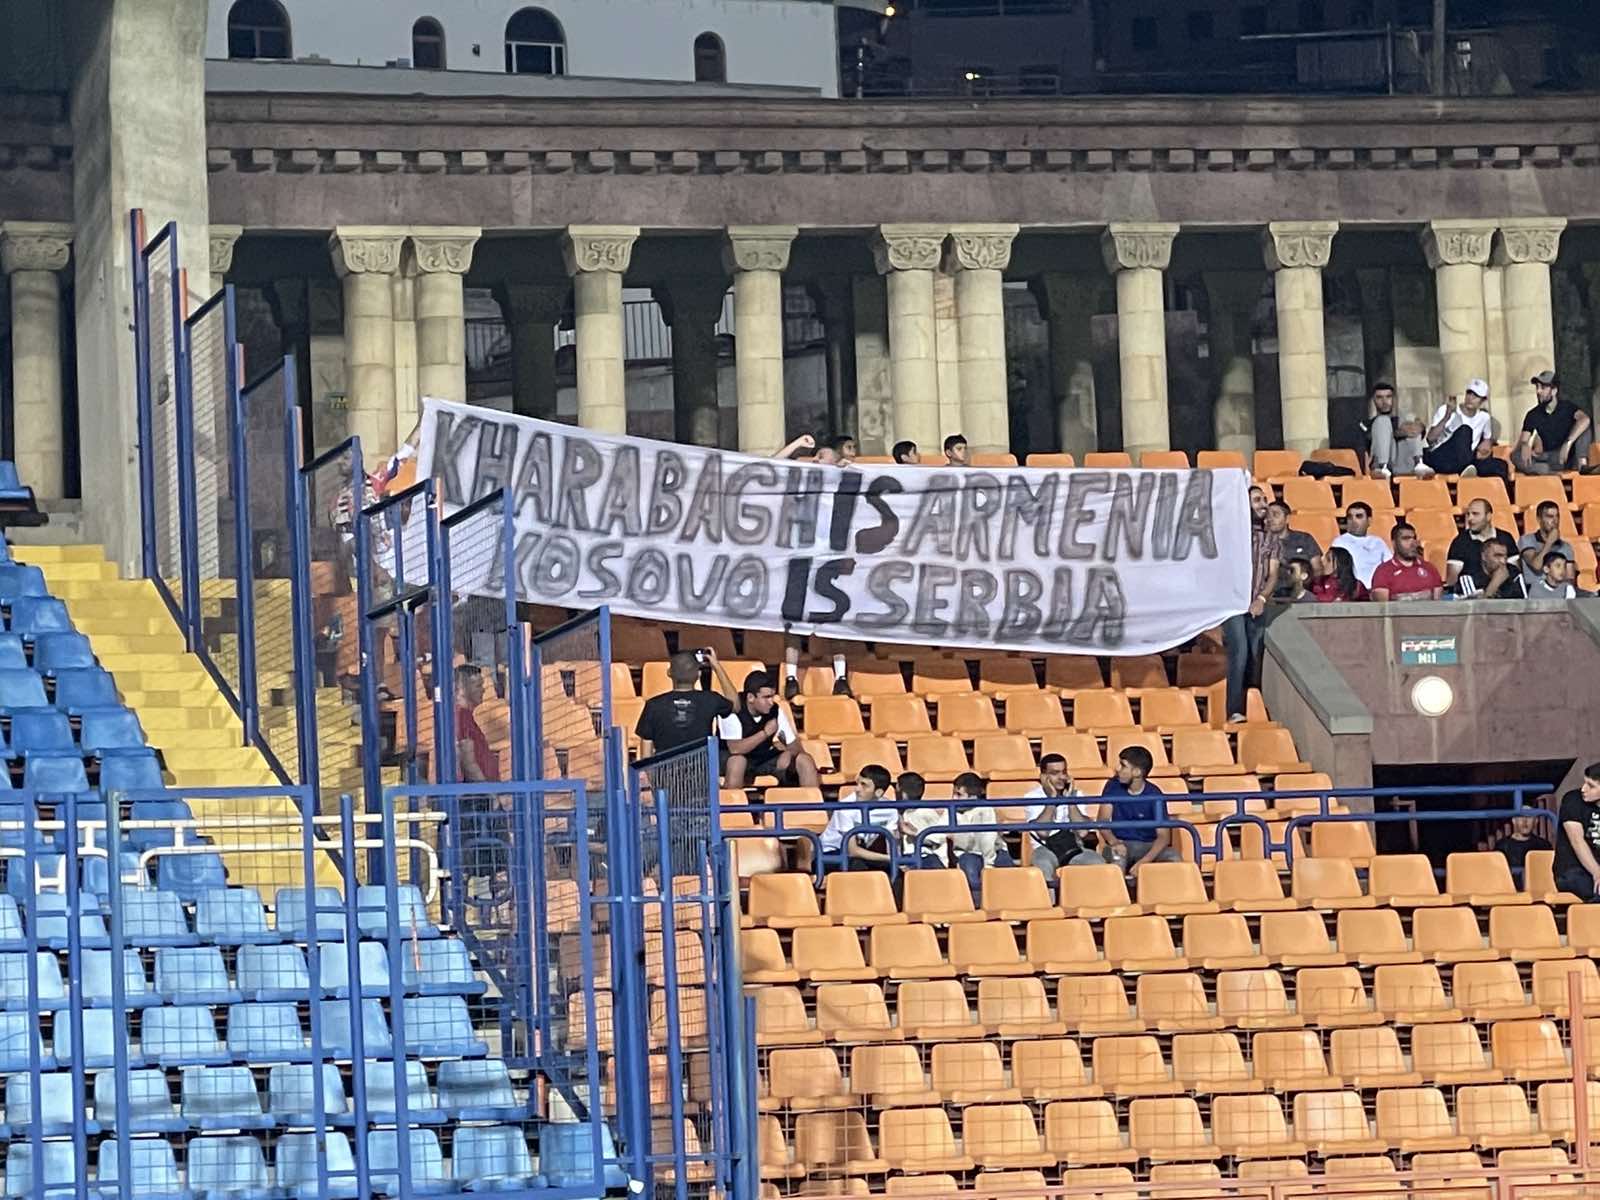  Poruka Kosovo je Srbija na utakmici Zvezde u Jermeniji 